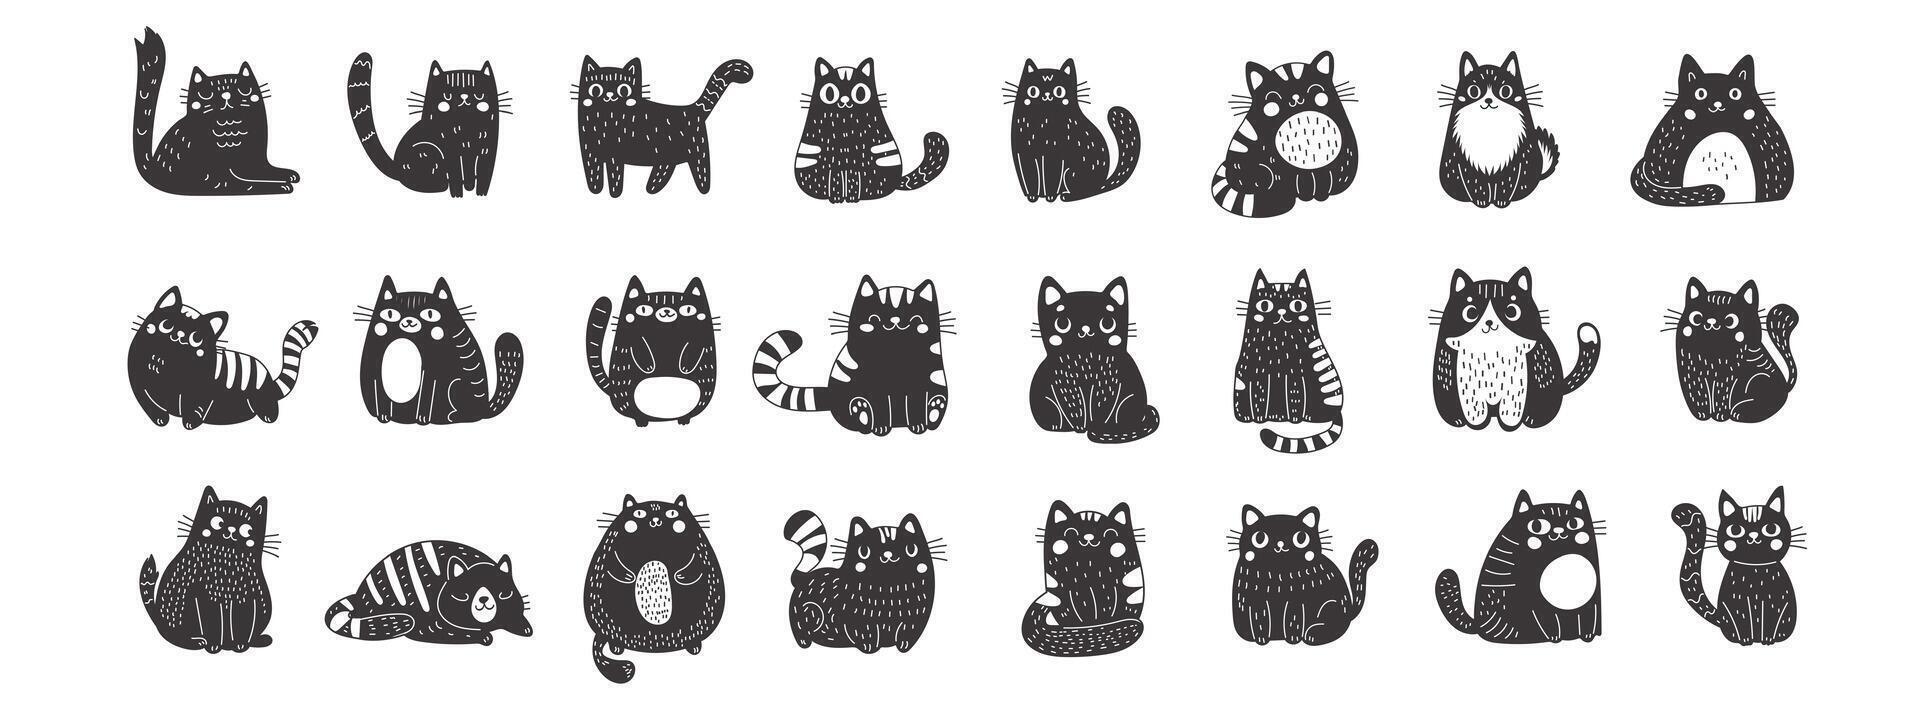 groß einstellen von schwarz Katzen im Linolschnitt Stil. süß komisch flauschige Katzen. perfekt zum jene Wer schätzen das Süss und wunderlich Seite von katzenartig Charme. Vektor Illustration auf ein Weiß Hintergrund.